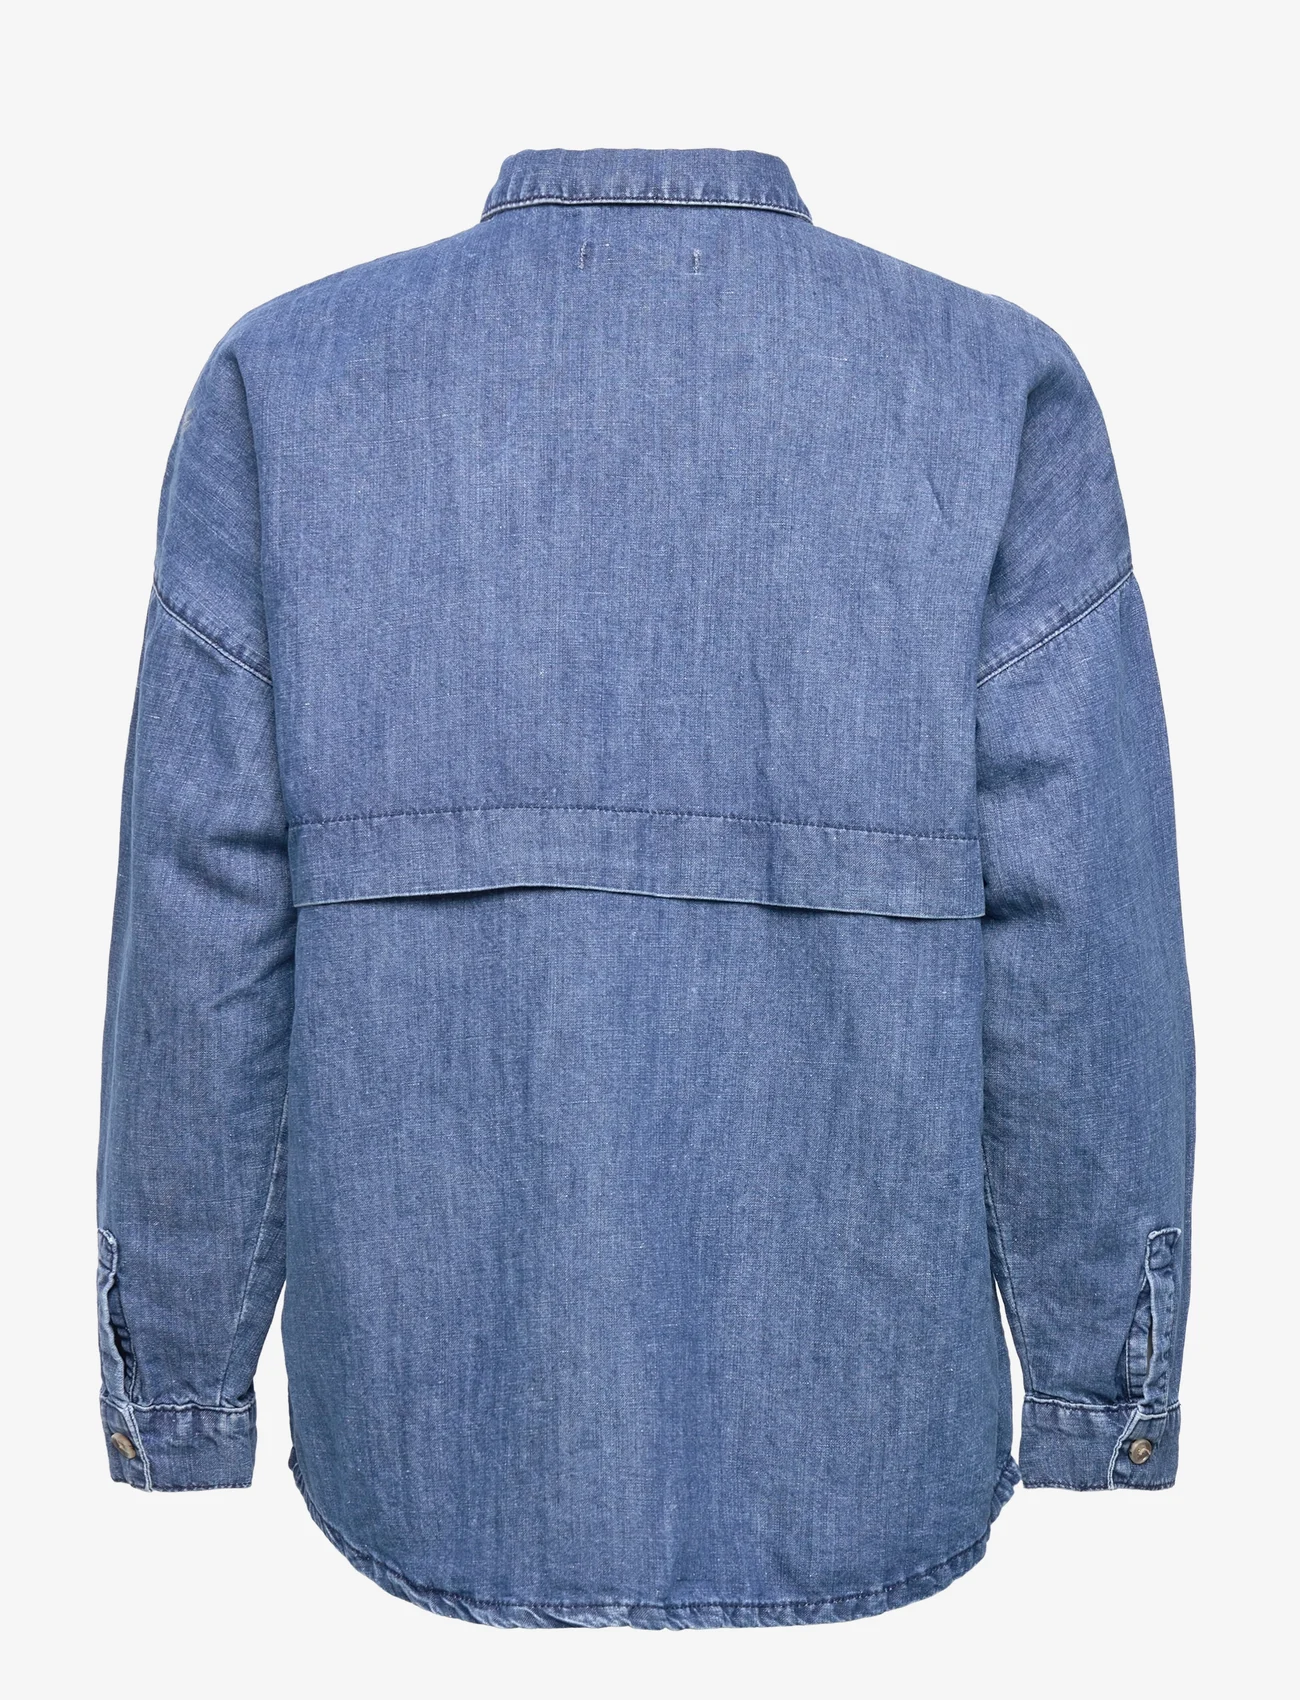 Esprit Collection - With hemp: denim blouse - džinsiniai marškiniai - blue medium wash - 1